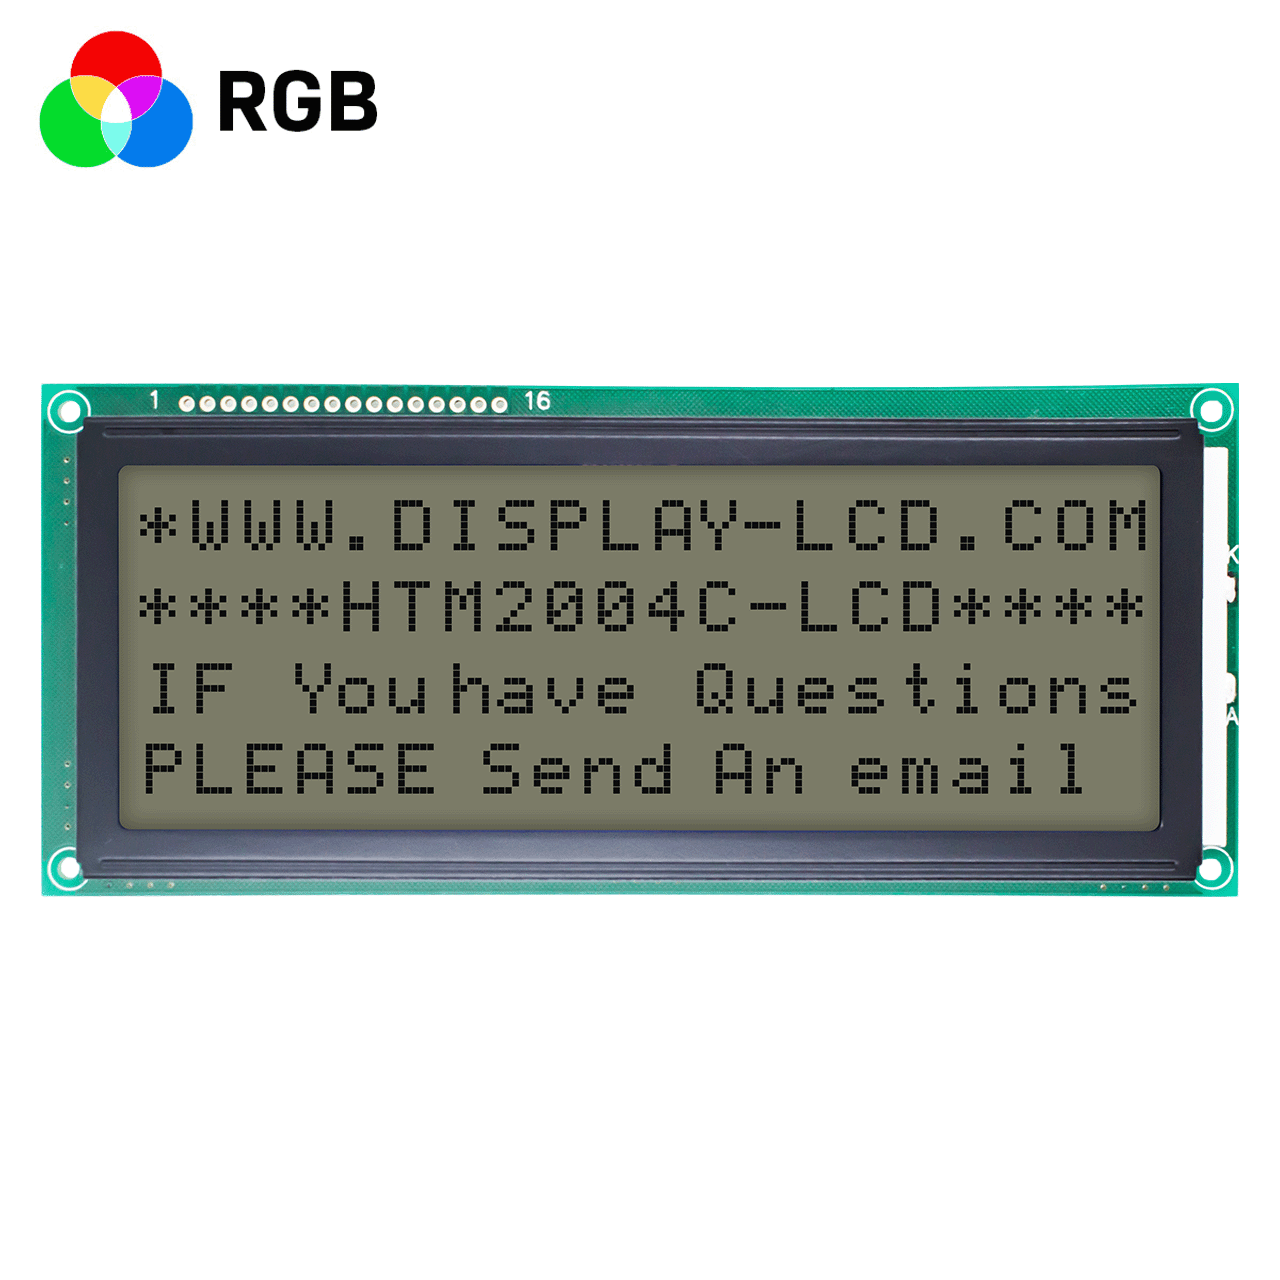 5.0 英寸 20x4 LCD 字符液晶显示模块 | FSTN 正片显示，RGB 红绿蓝背光 | ST7066 | MCU 接口  | 适用于Adruino | 全透偏光片